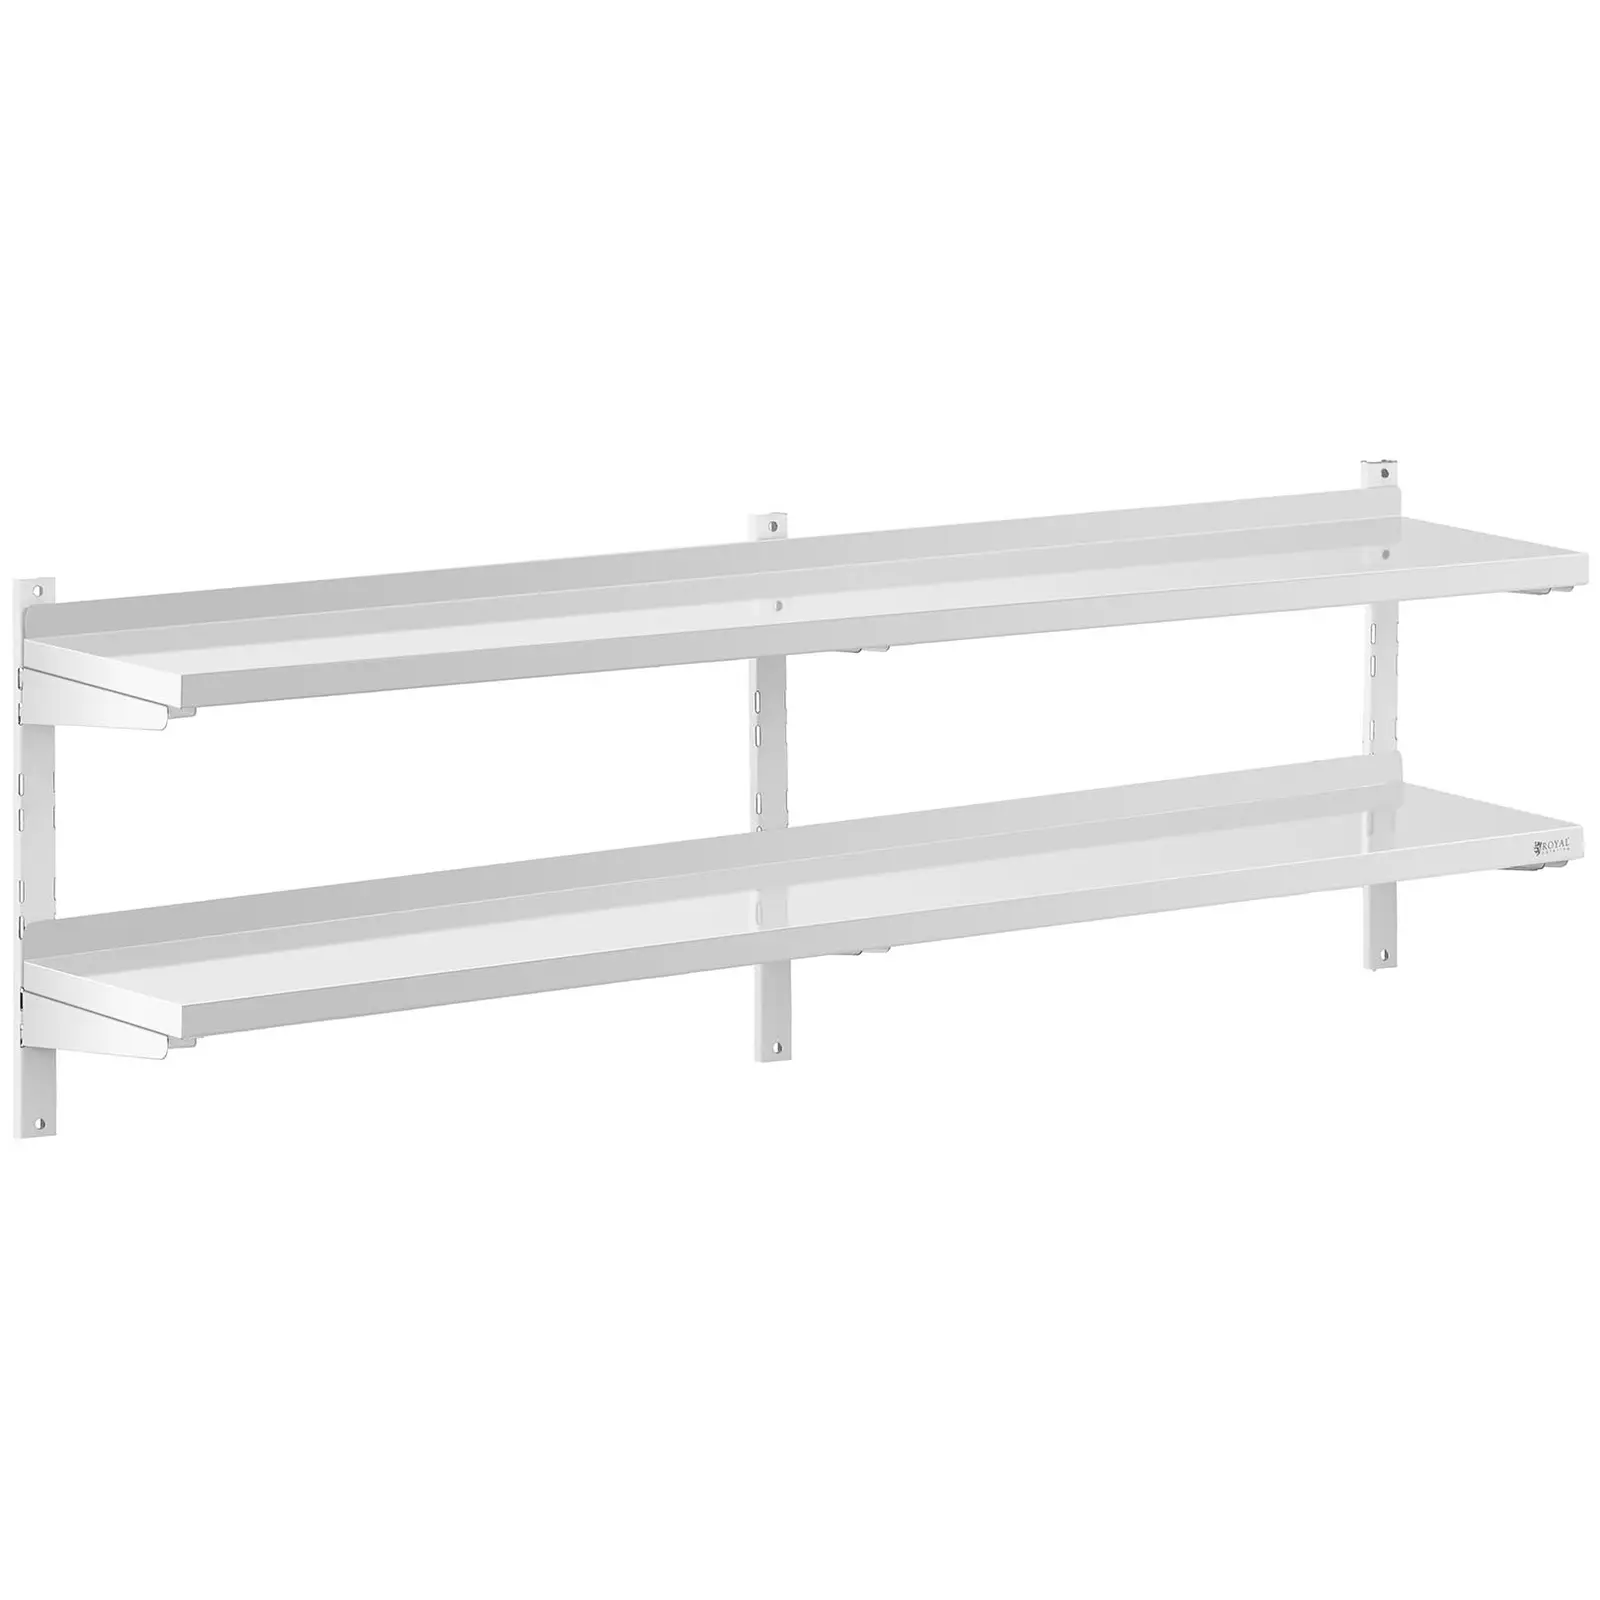 Stainless Steel Wall Shelf - 2 shelves - 30 x 200 cm